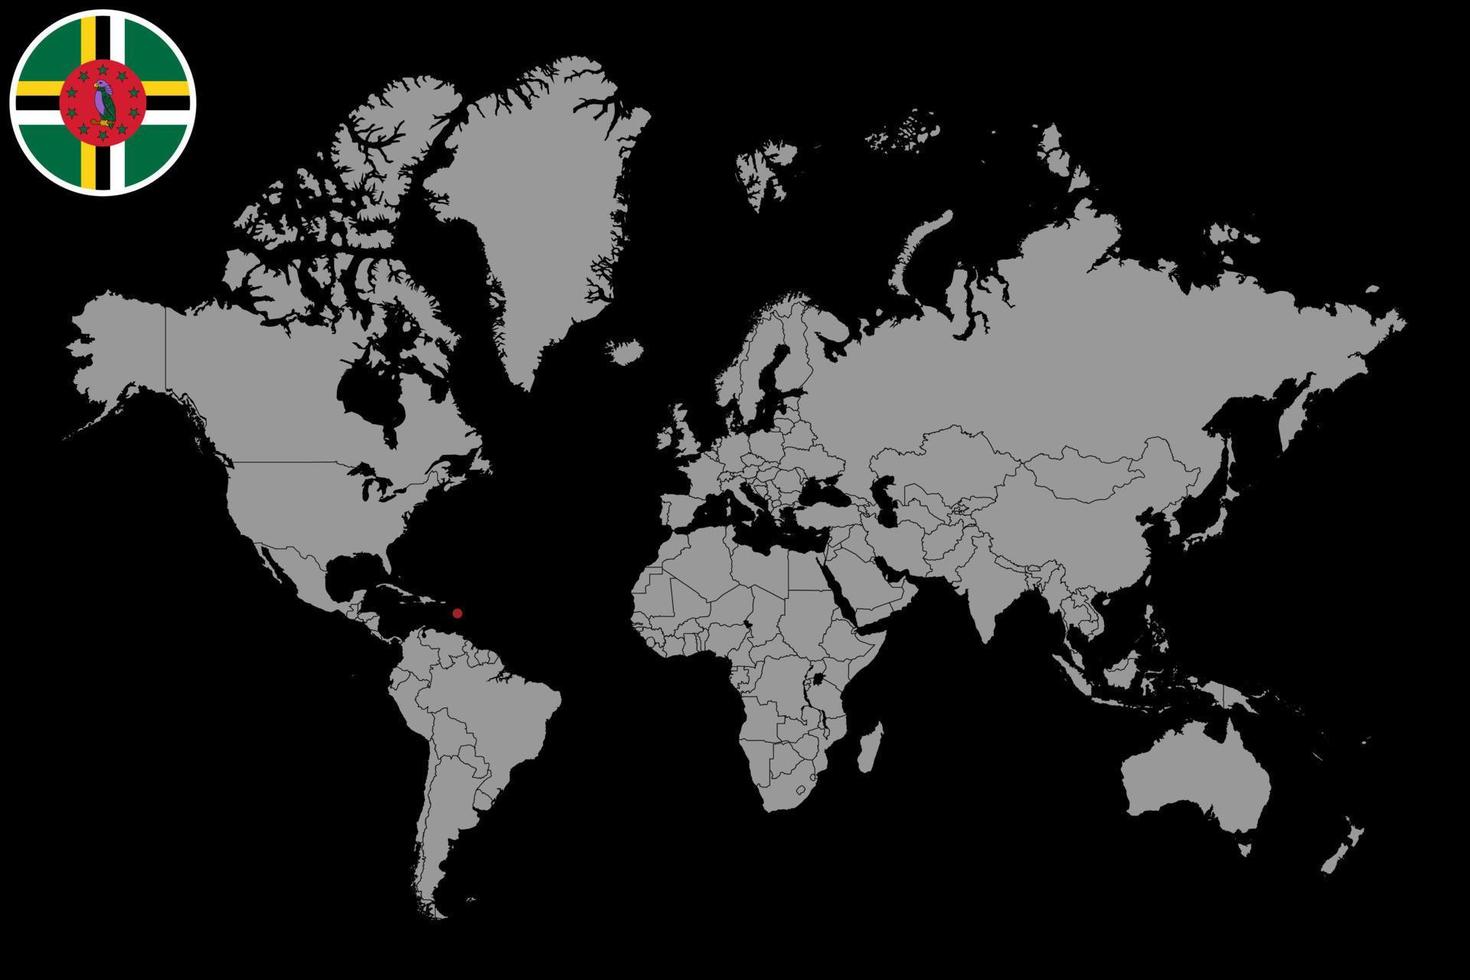 mappa pin con bandiera dominica sulla mappa del mondo. illustrazione vettoriale. vettore